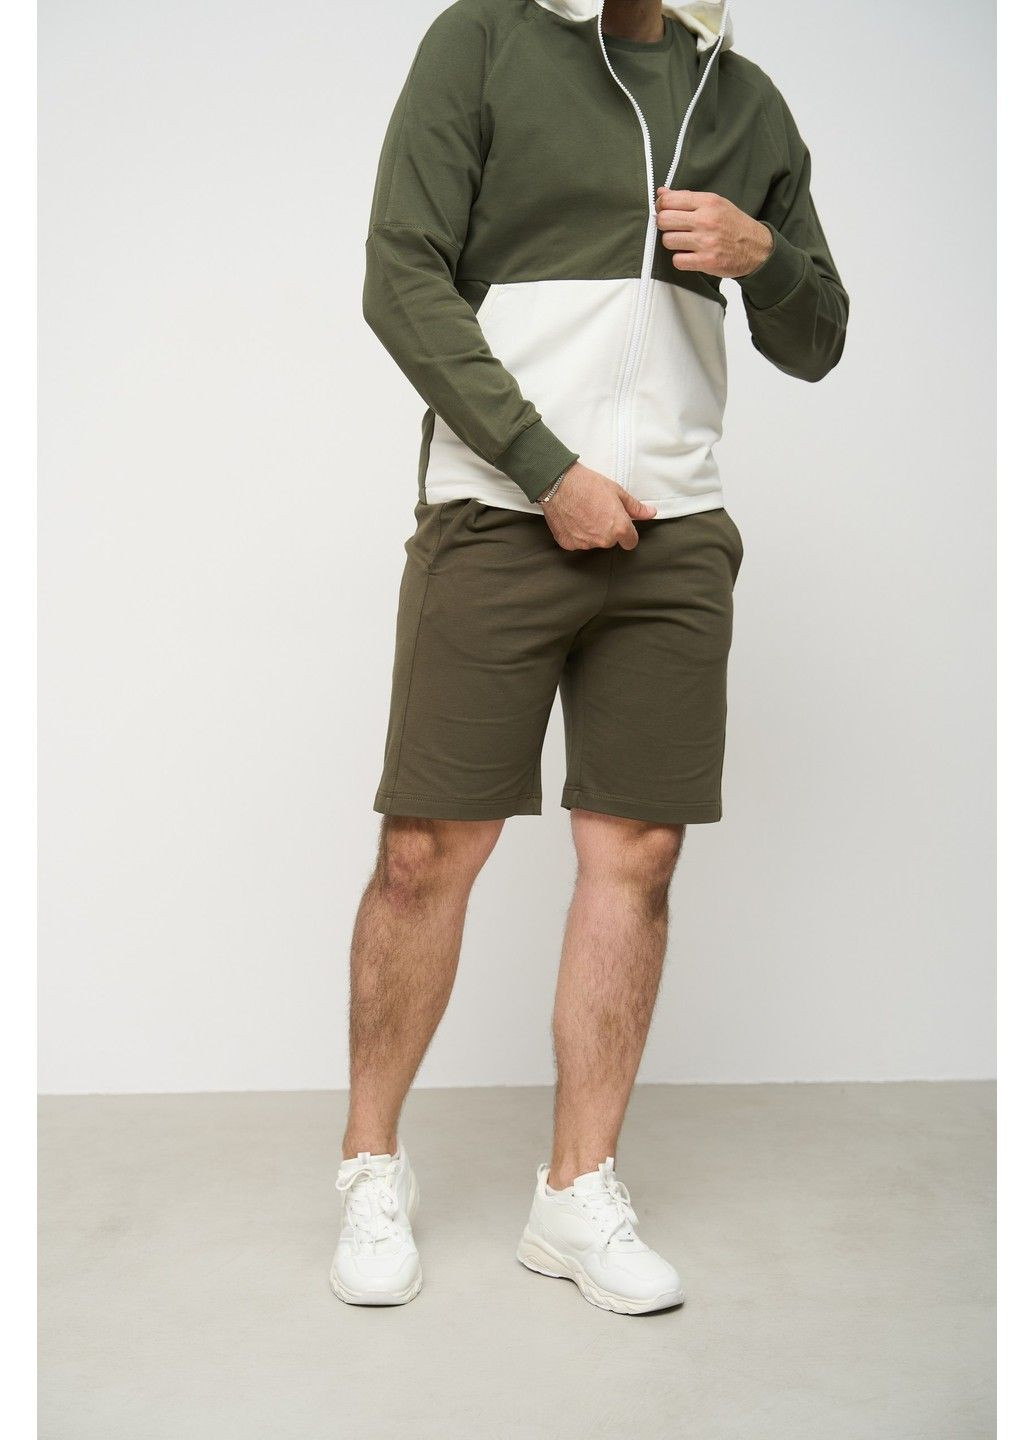 Спортивный костюм мужской лето SUMMER с кофтой на замке + шорты хаки молочный Handy Wear (293510739)